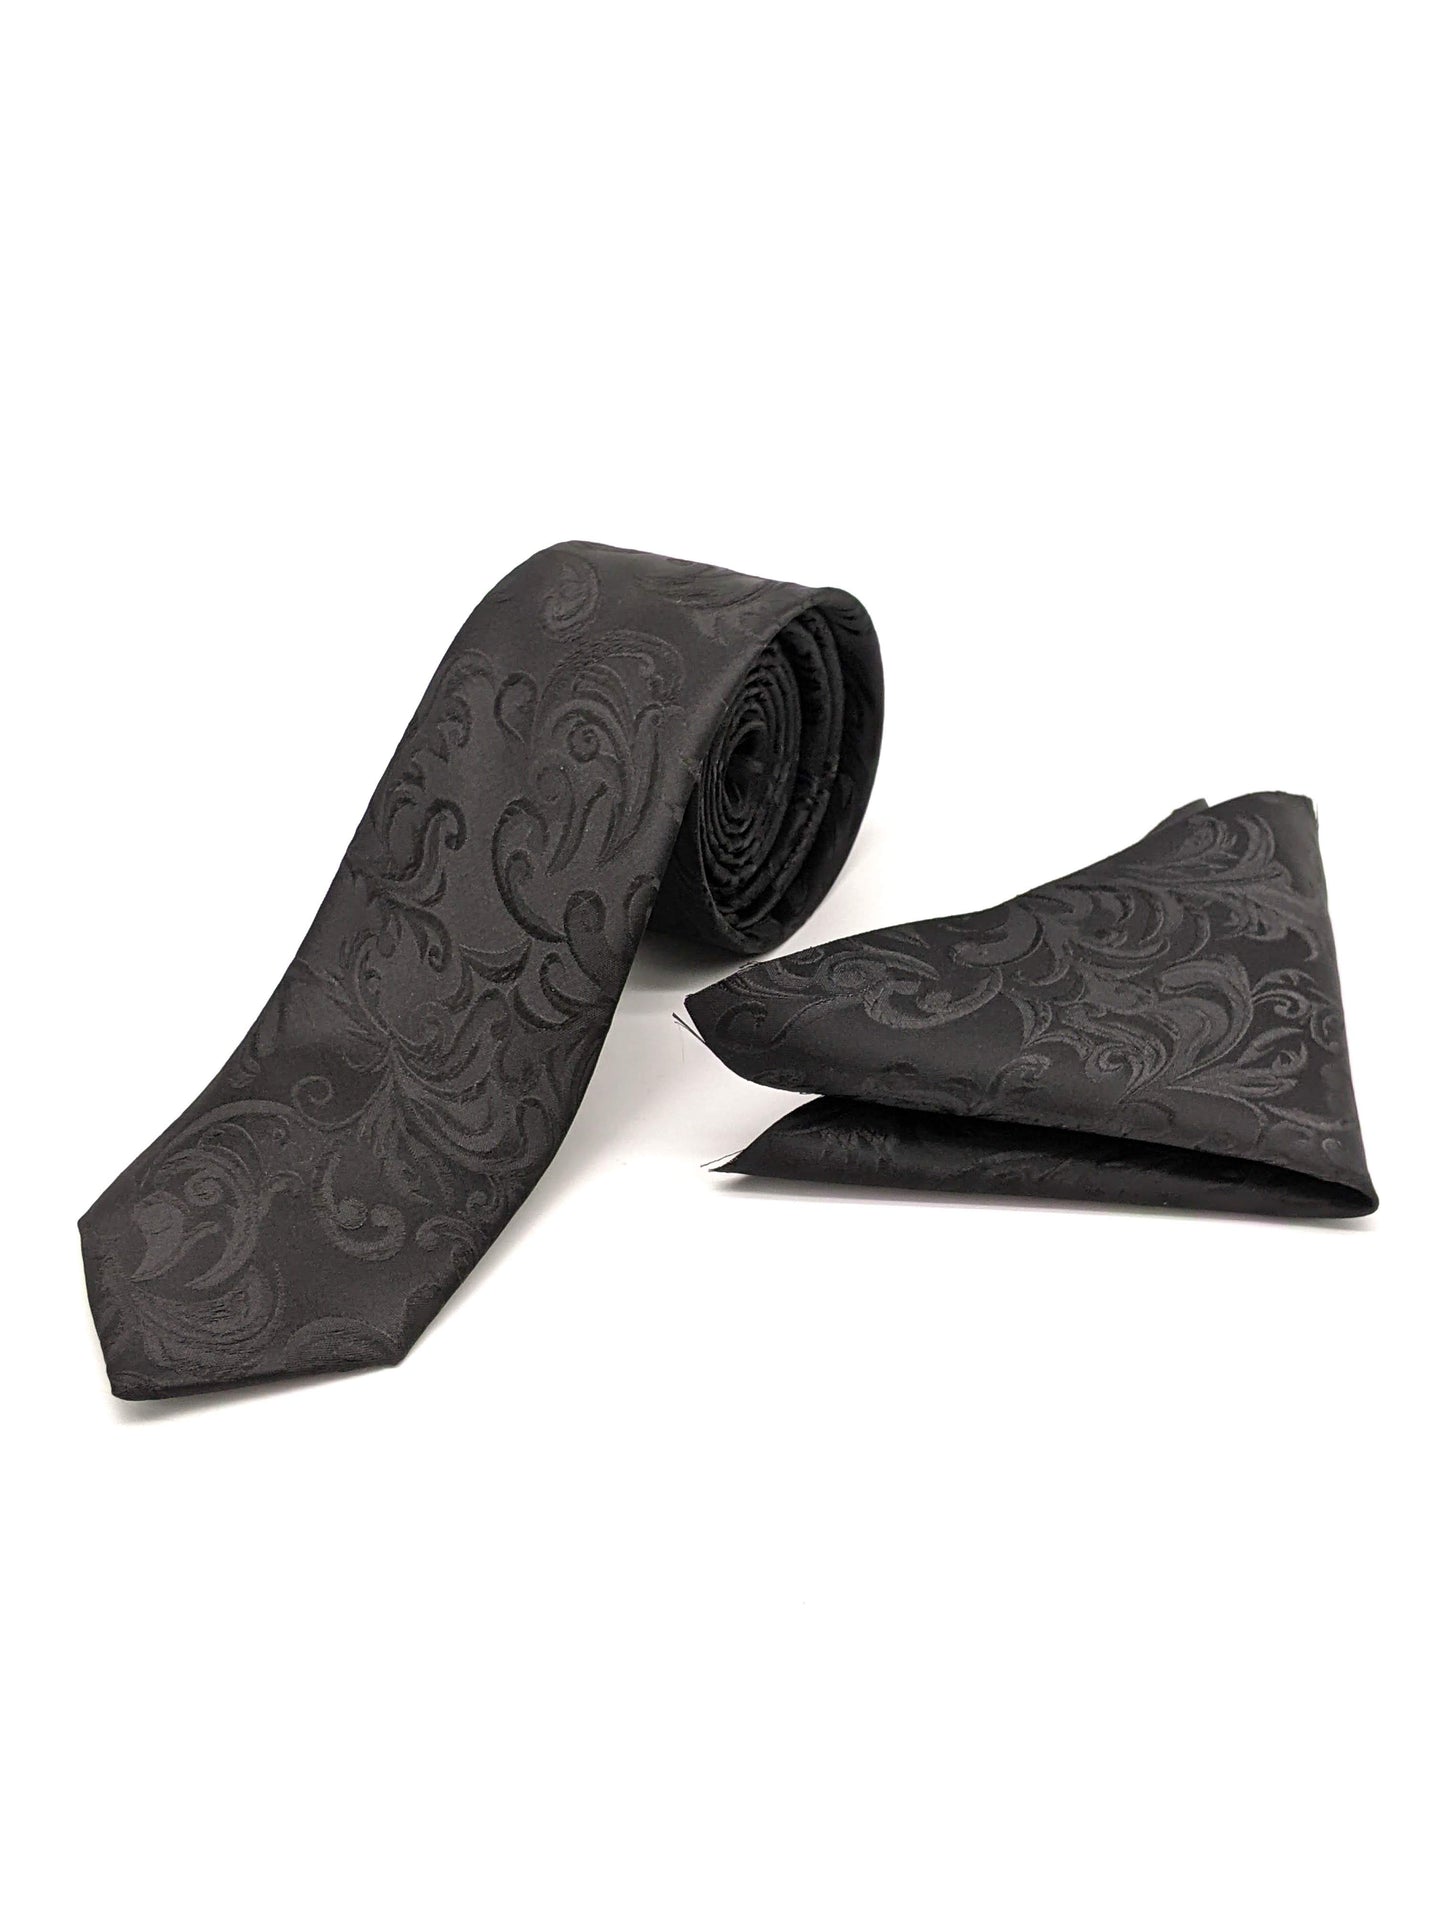 Satin Tie and Pocket Square ~ in Black